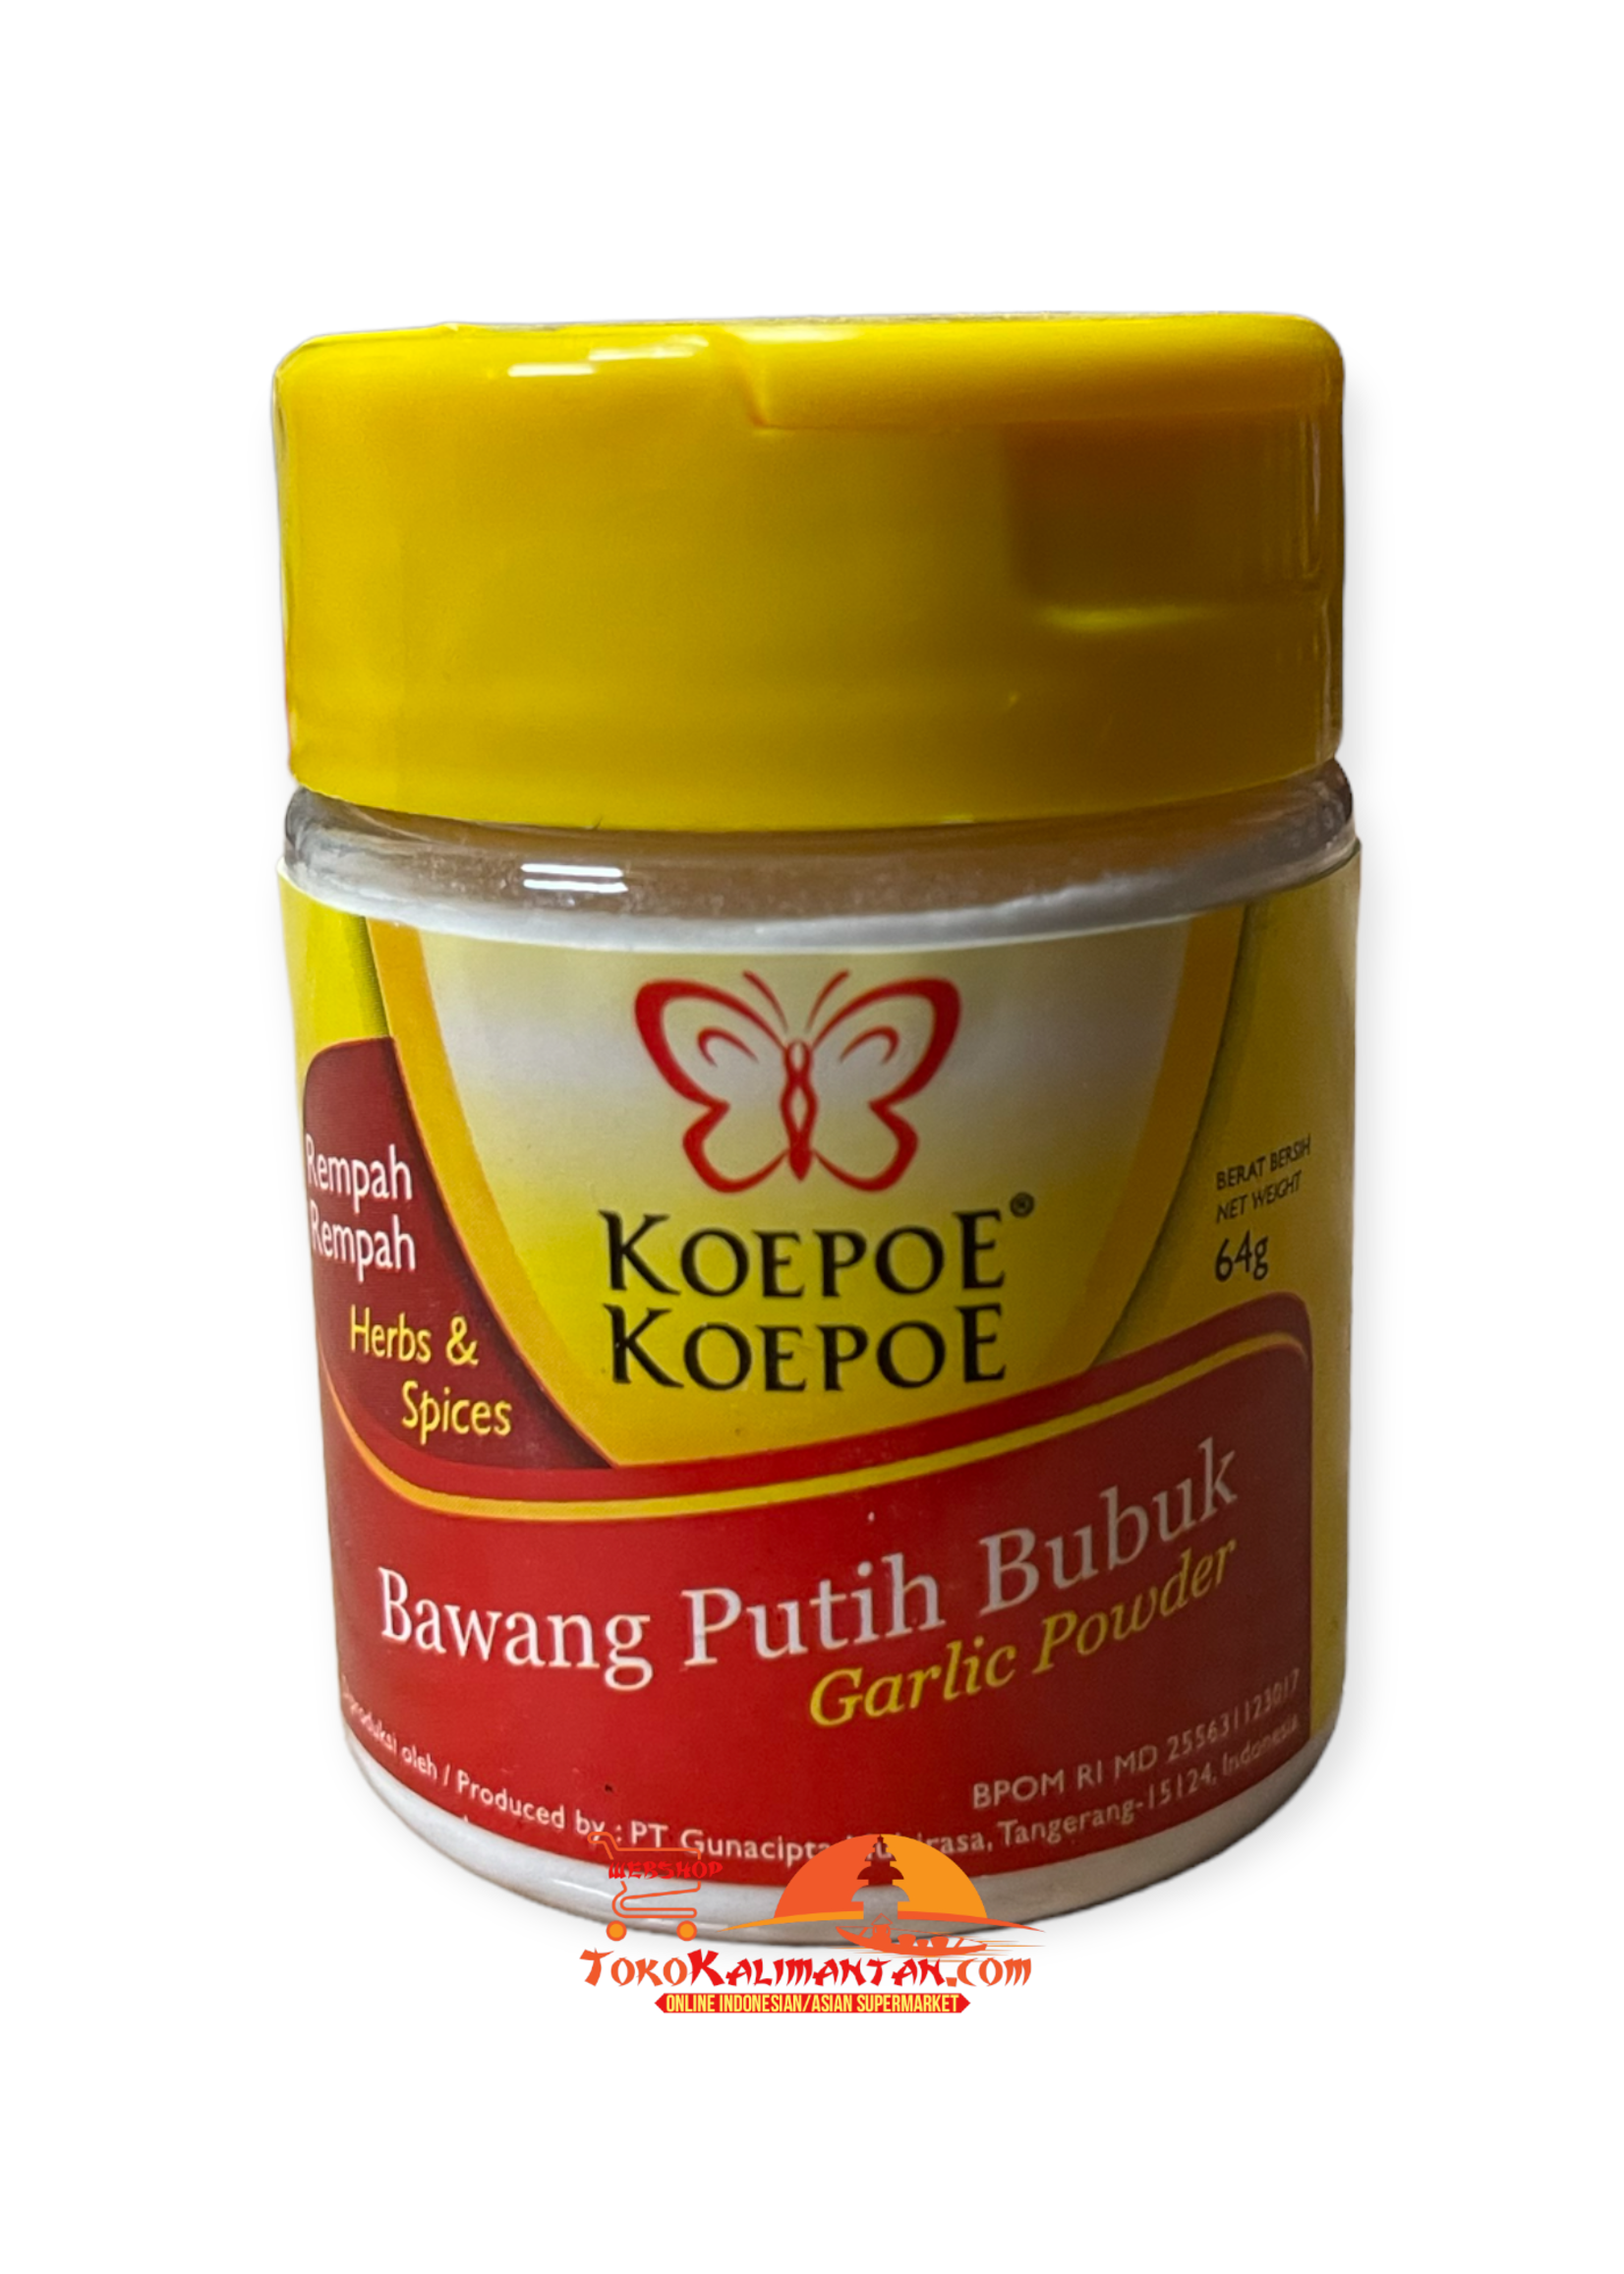 Koepoe-Koepoe Koepoe koepoe - bawang putih bubuk